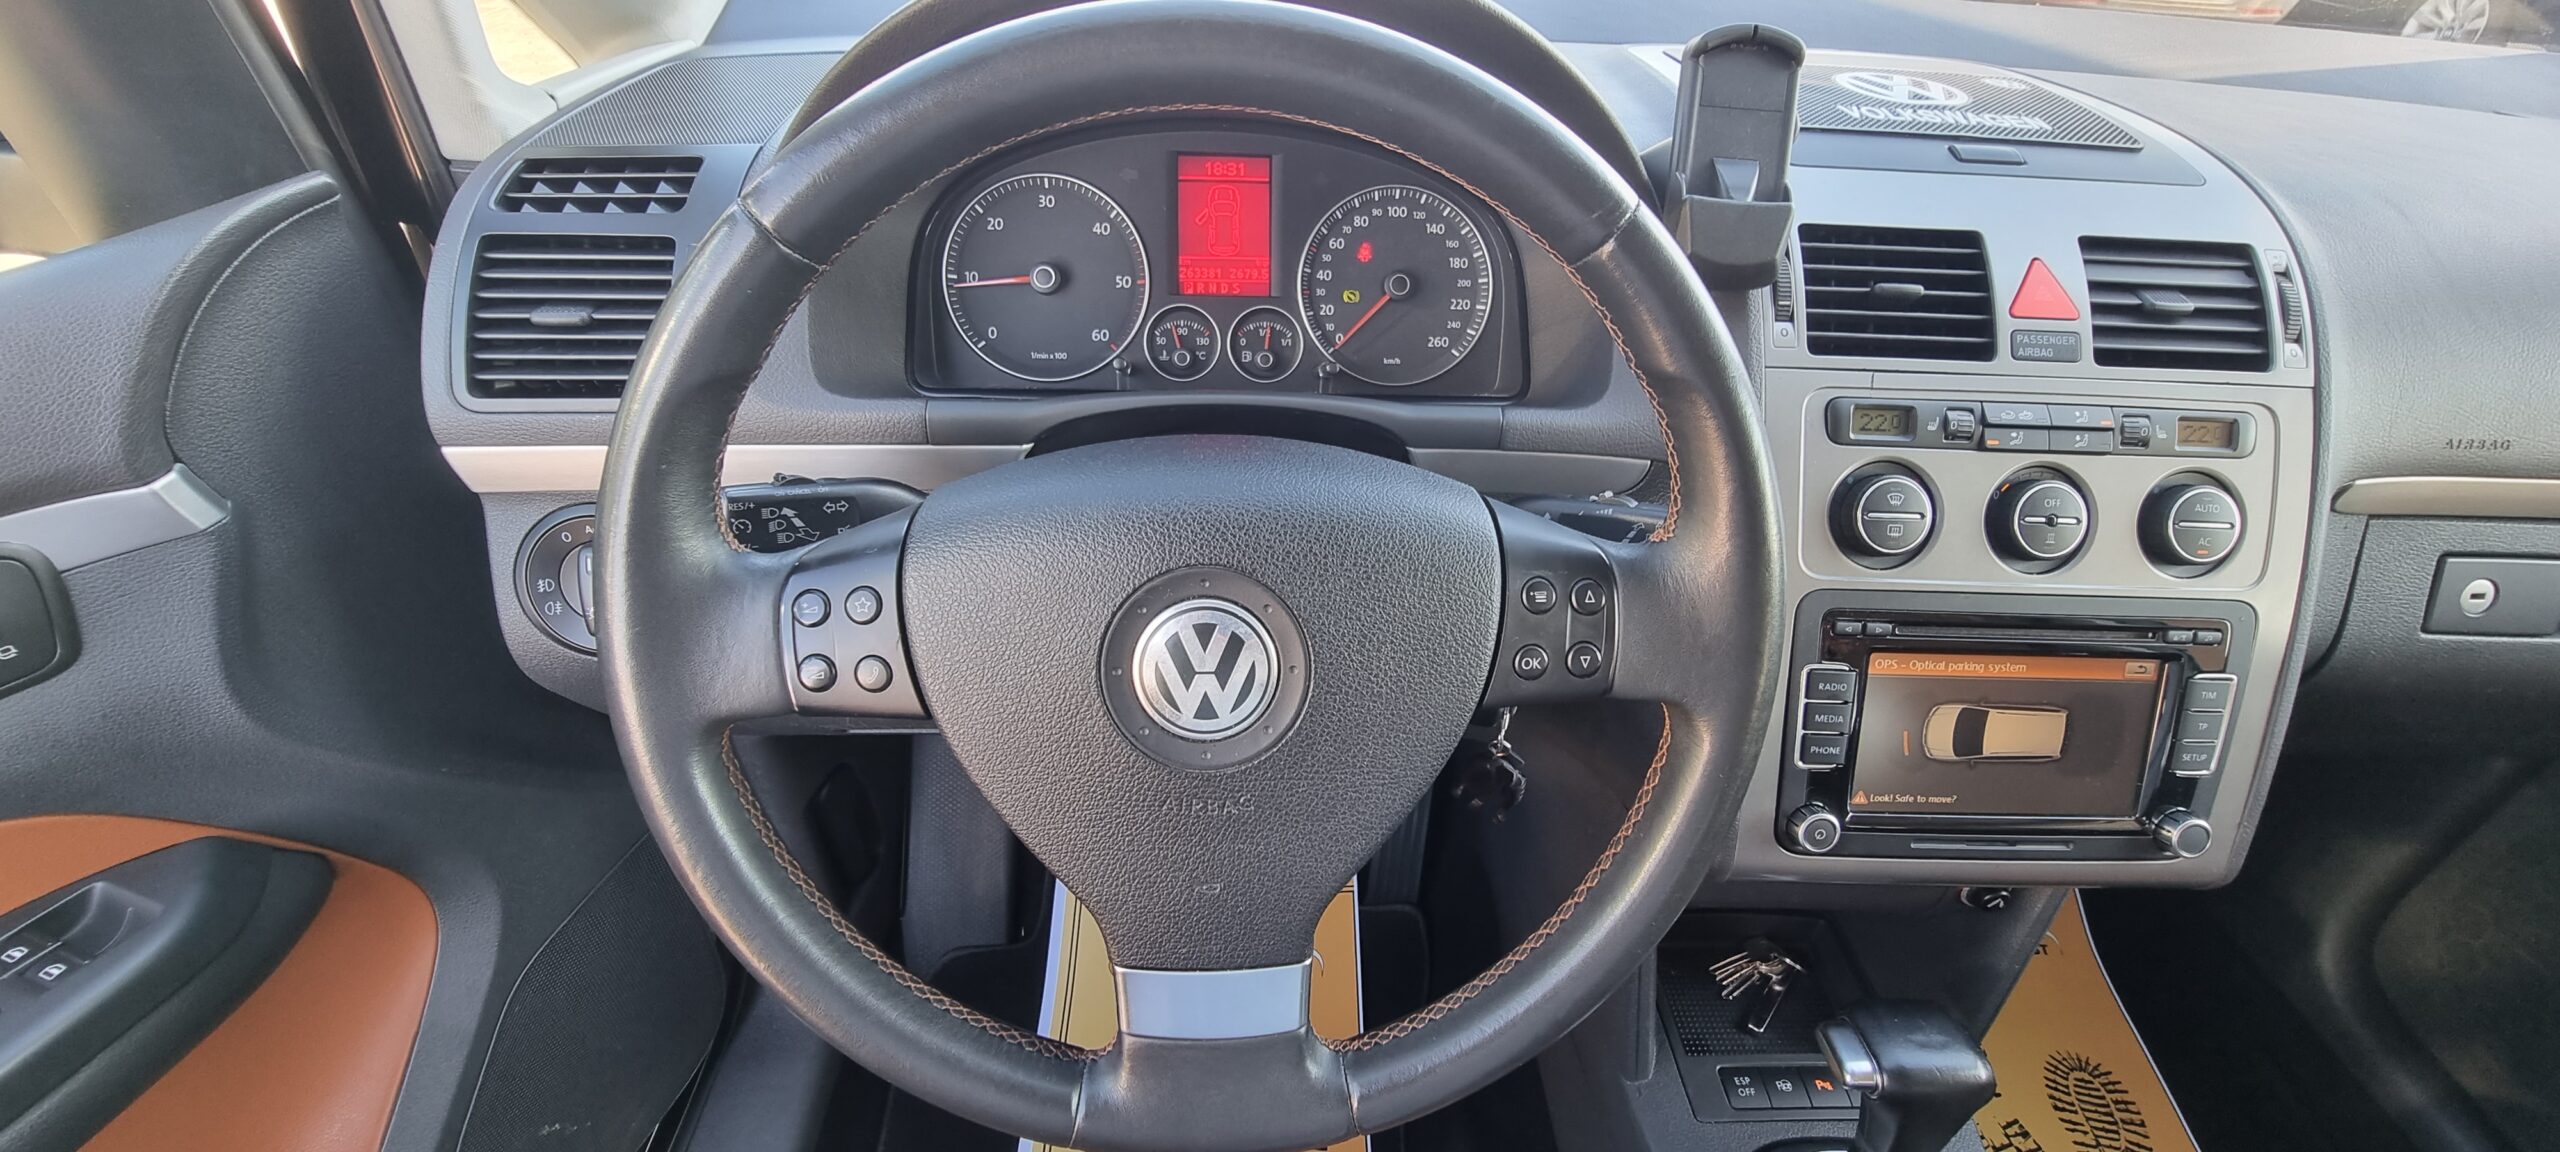 VW TOURAN 2.0 TDI